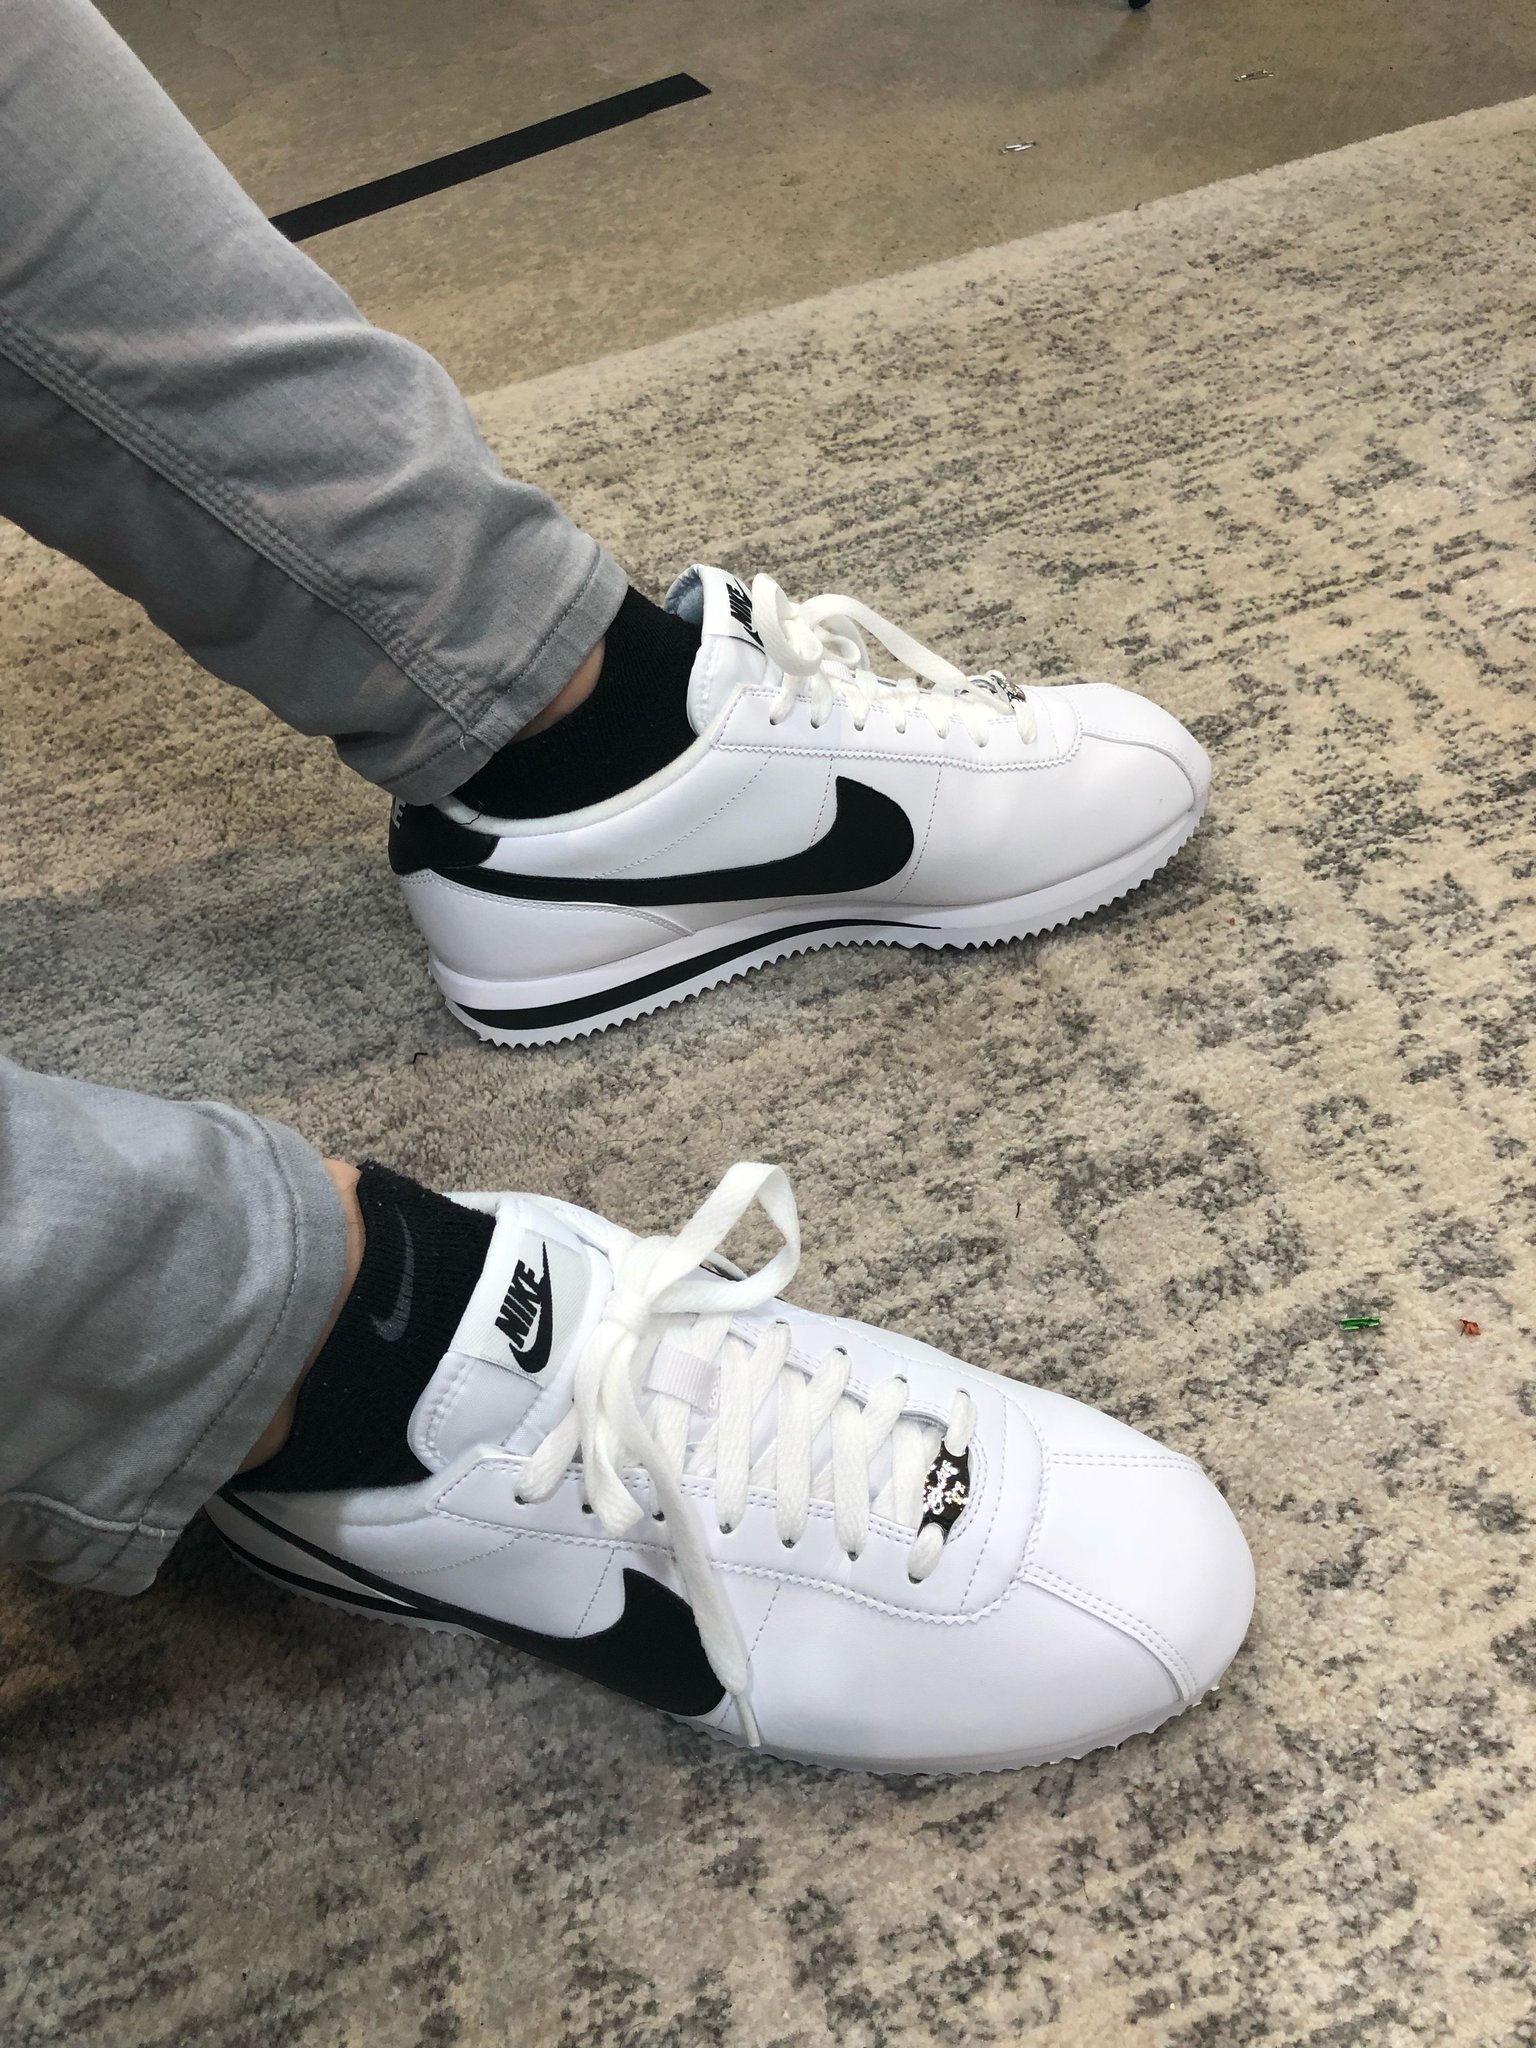 James Bardolph on Twitter: "Got @ddkesports Nike Cortez (new socks en route) https://t.co/isBdkEVxy1" / Twitter